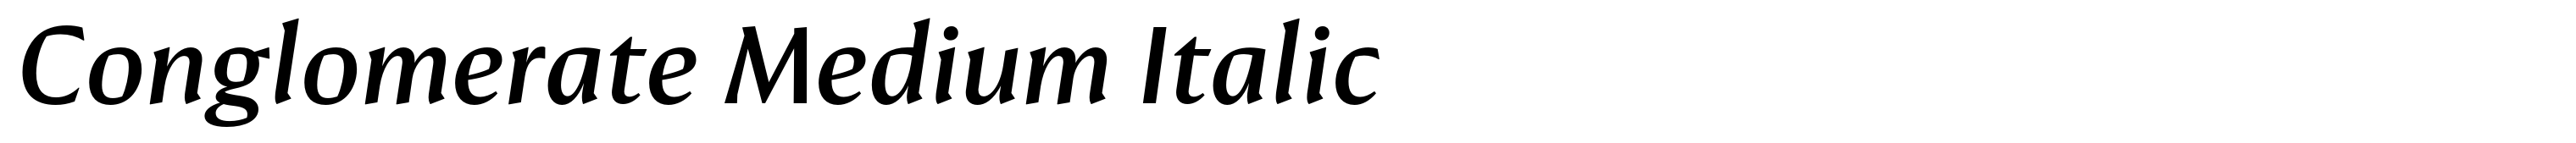 Conglomerate Medium Italic